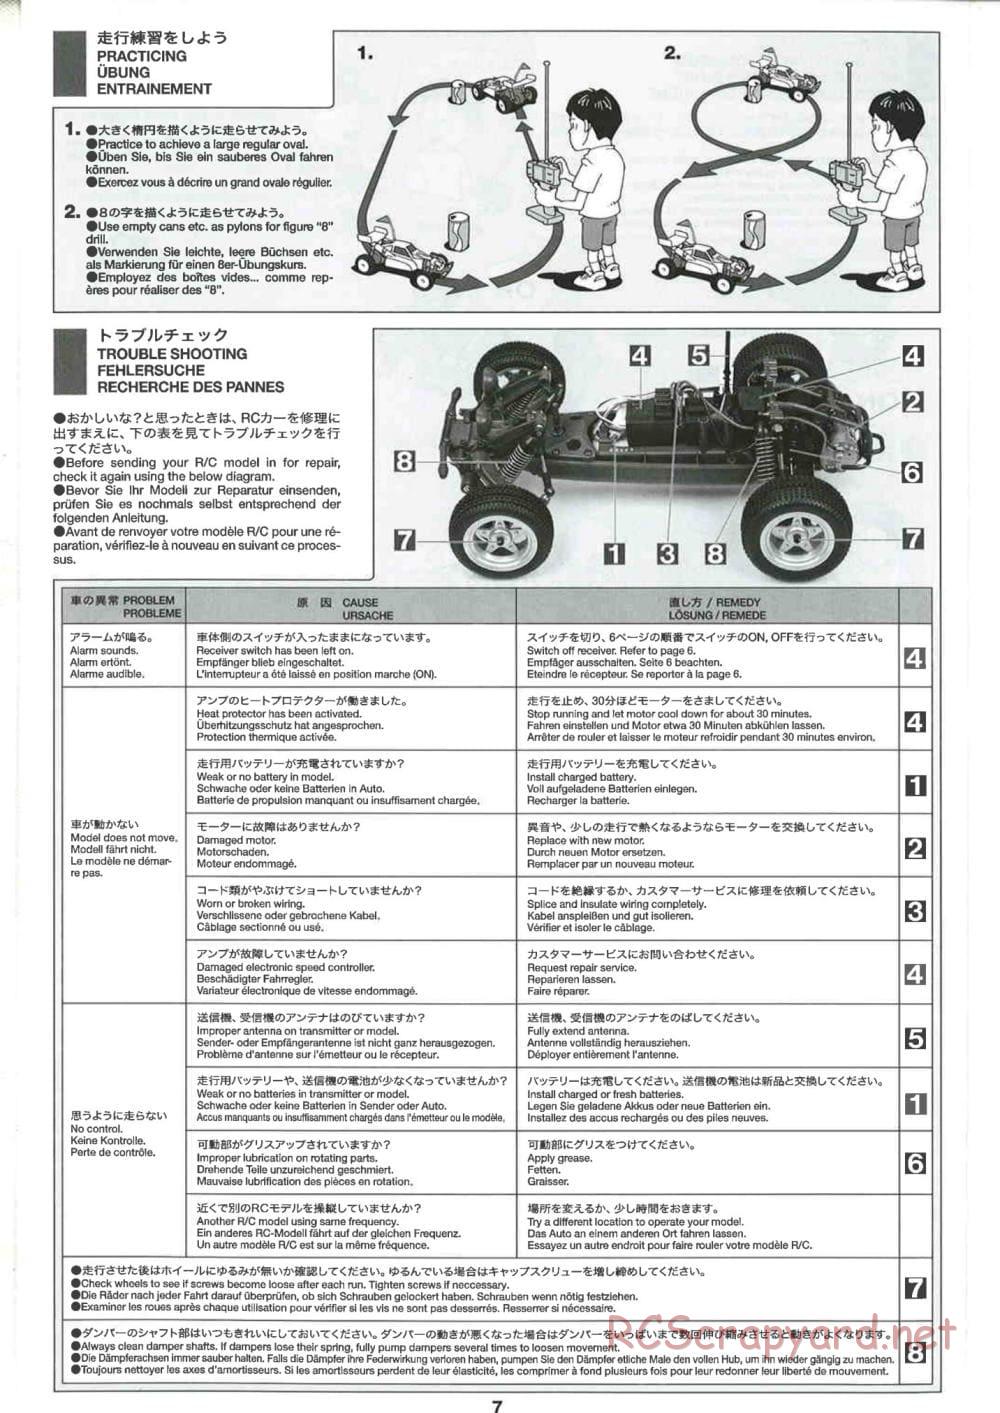 Tamiya - GB-02 Chassis - Manual - Page 7